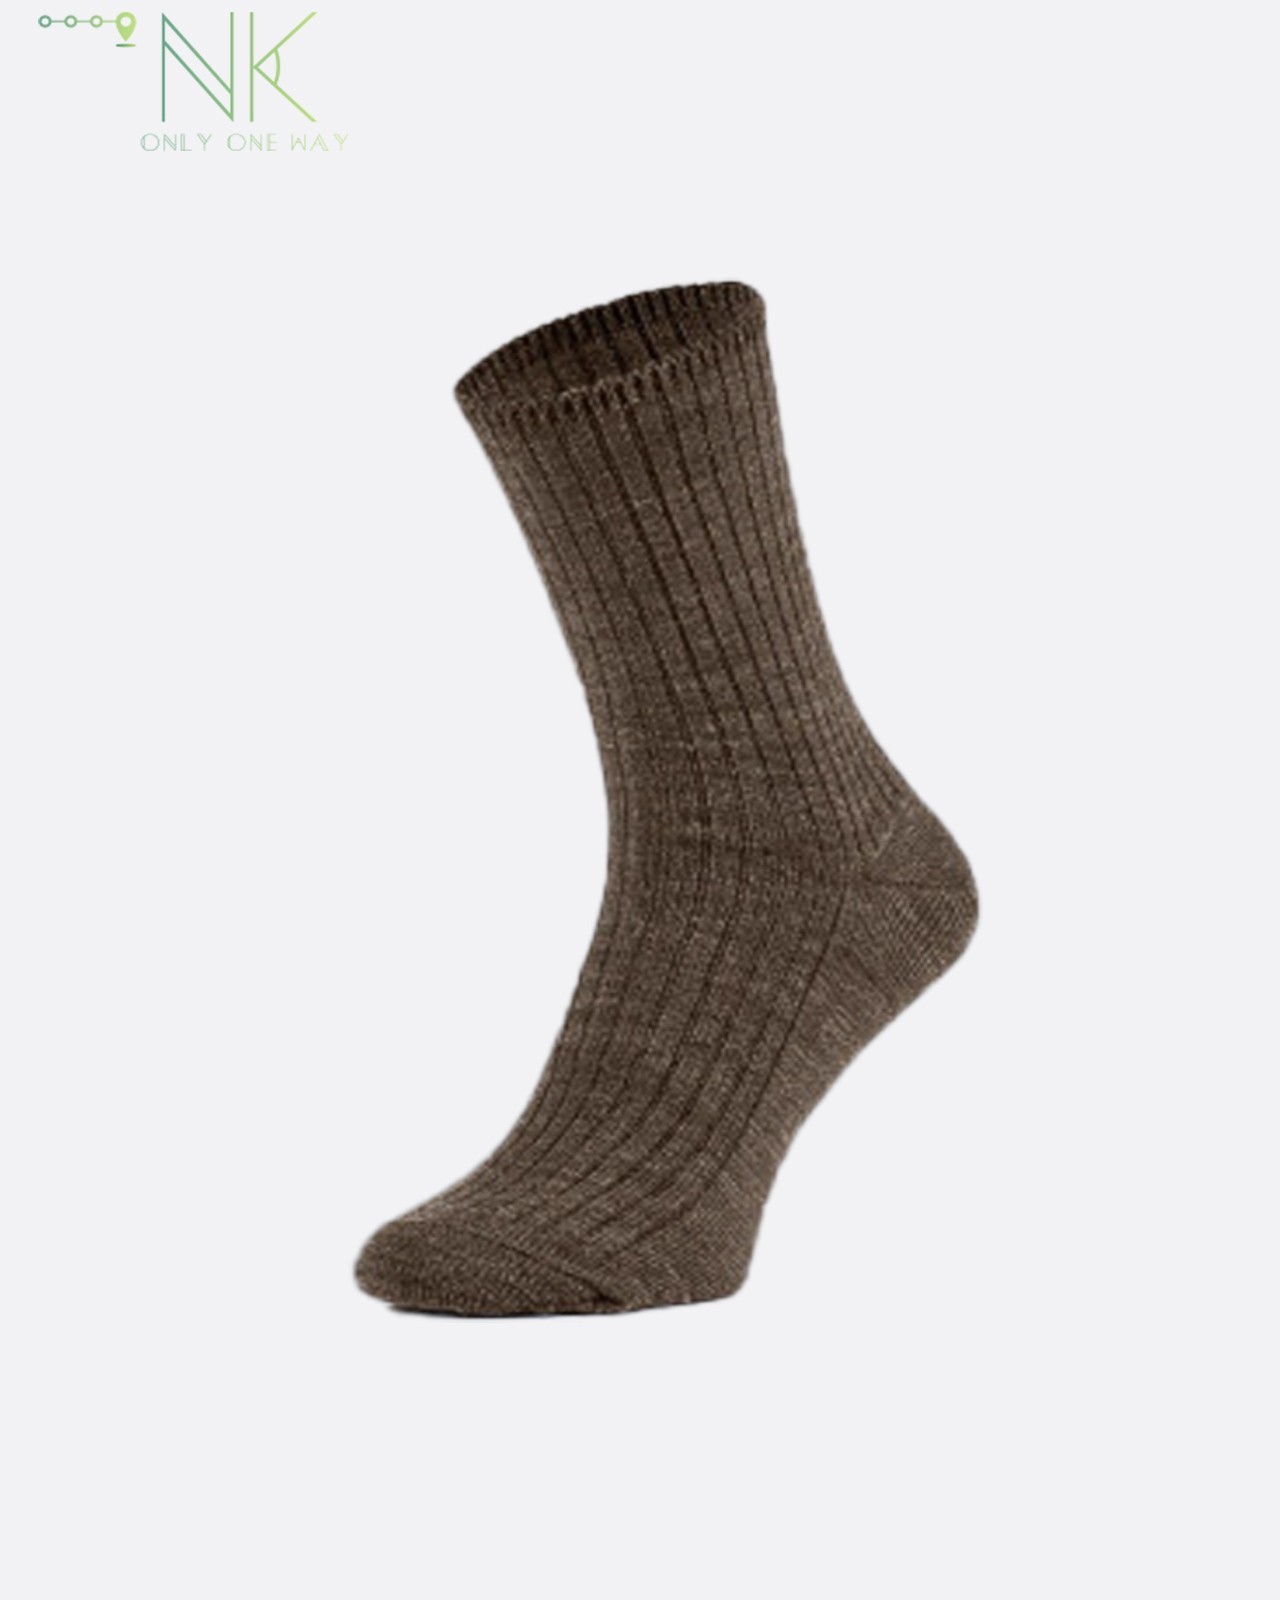 Men`s socks TAK Natural Wool